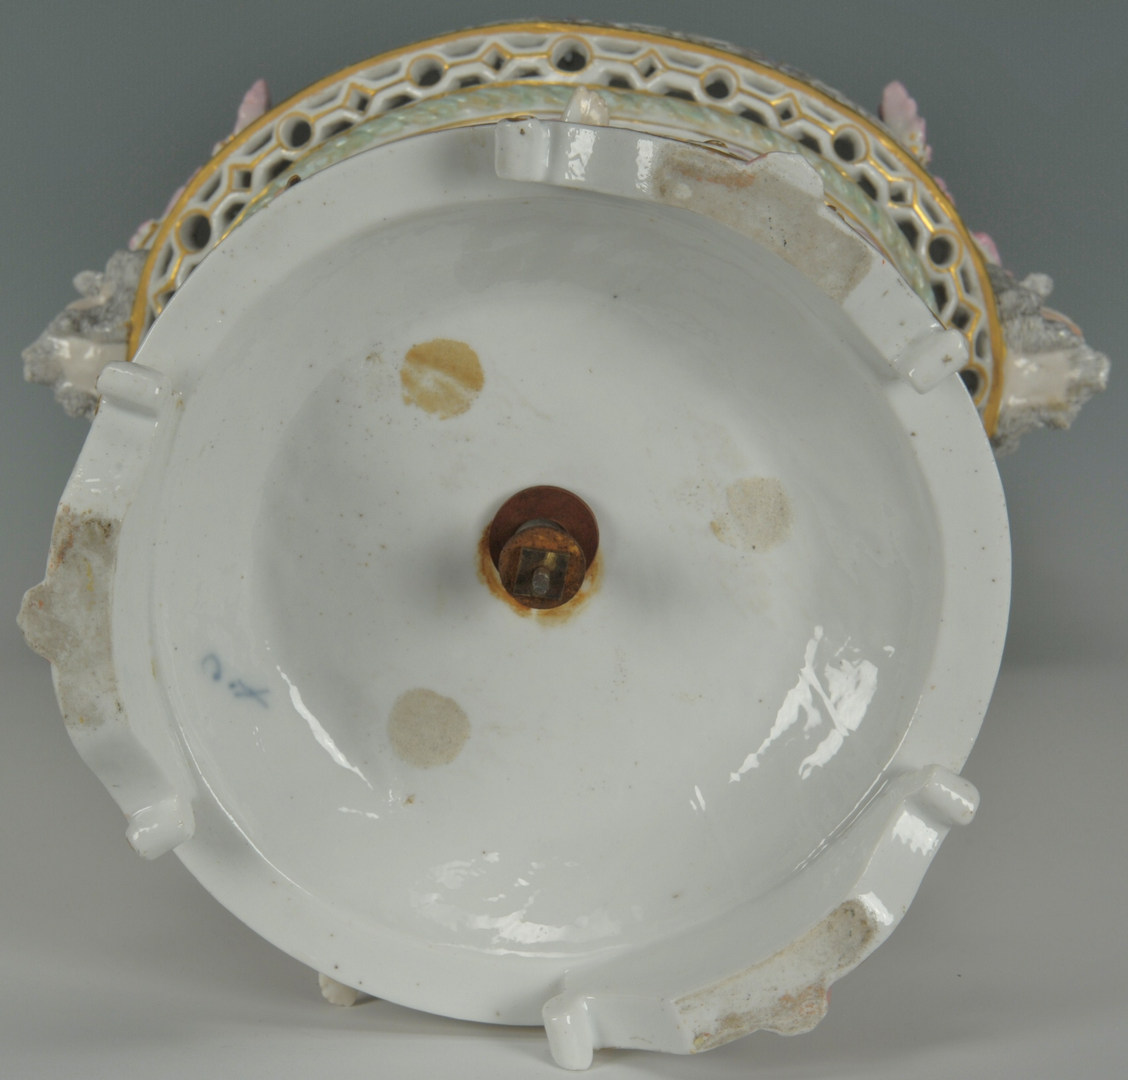 Lot 247: Large Meissen Style Figural Porcelain Centerpiece